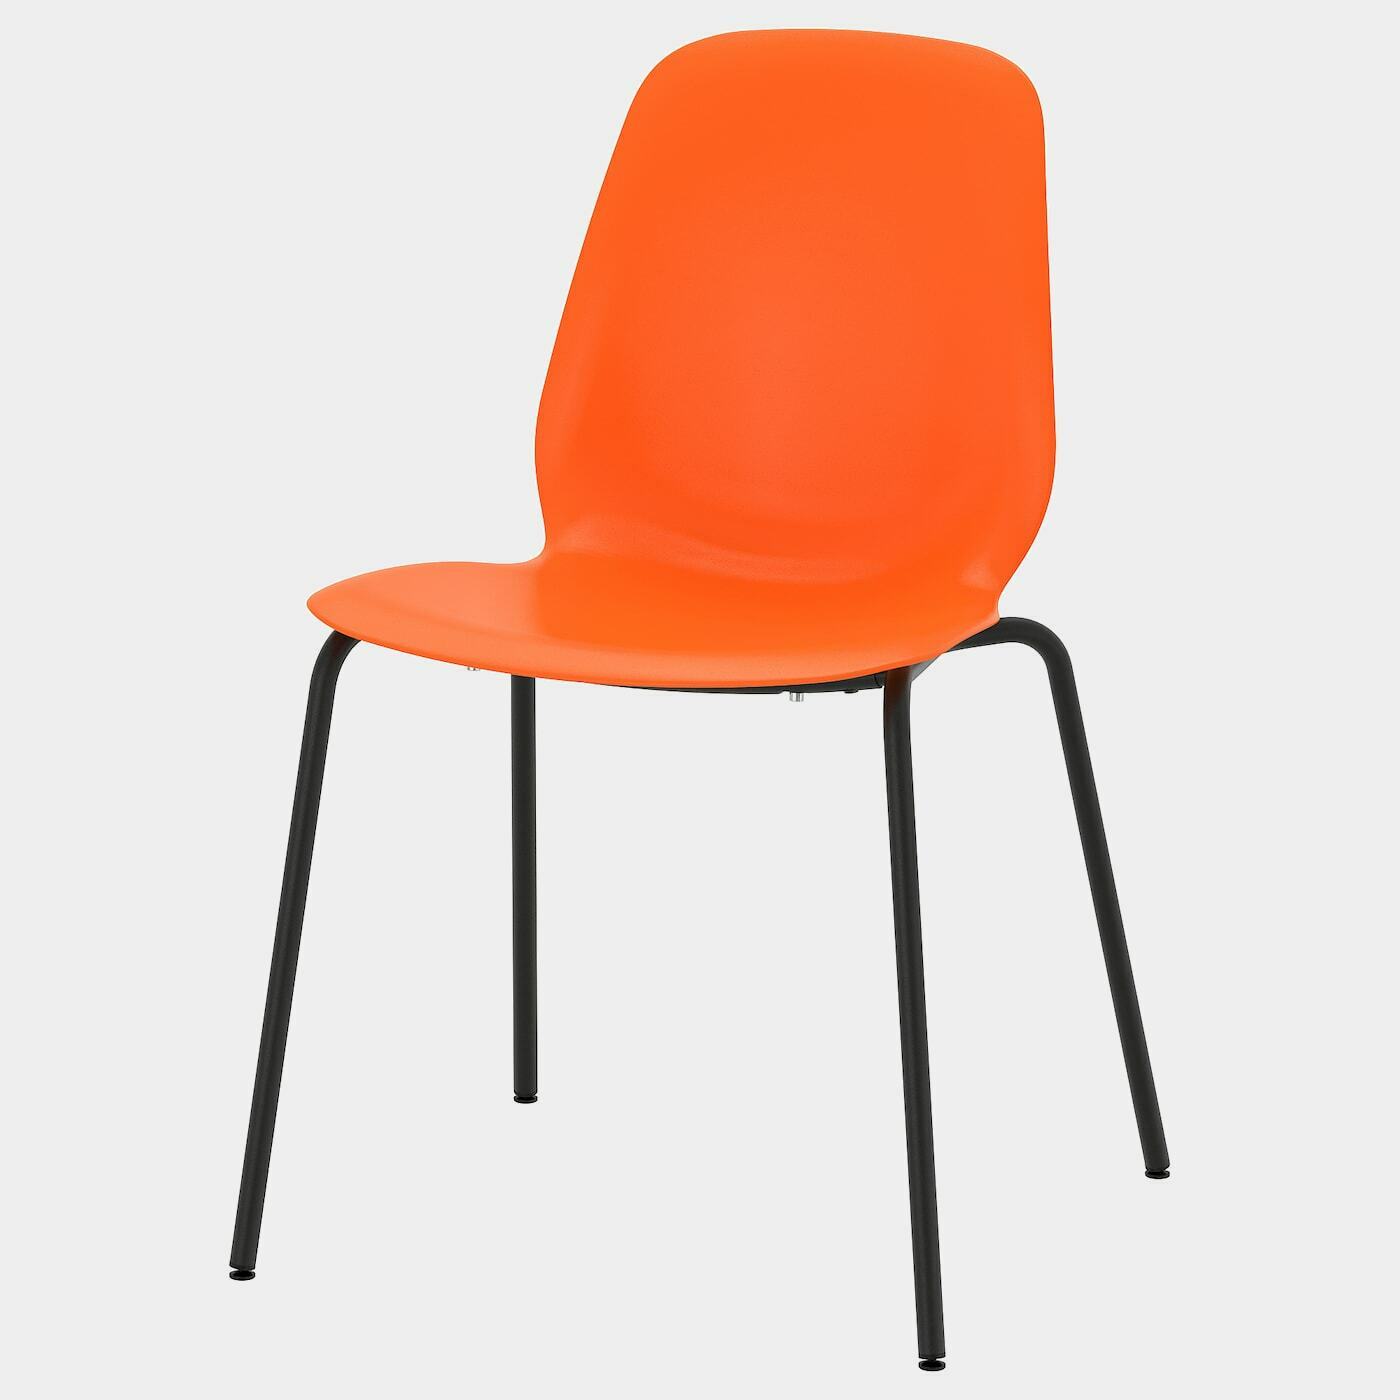 LEIFARNE Stuhl  - Esszimmerstühle - Möbel Ideen für dein Zuhause von Home Trends. Möbel Trends von Social Media Influencer für dein Skandi Zuhause.